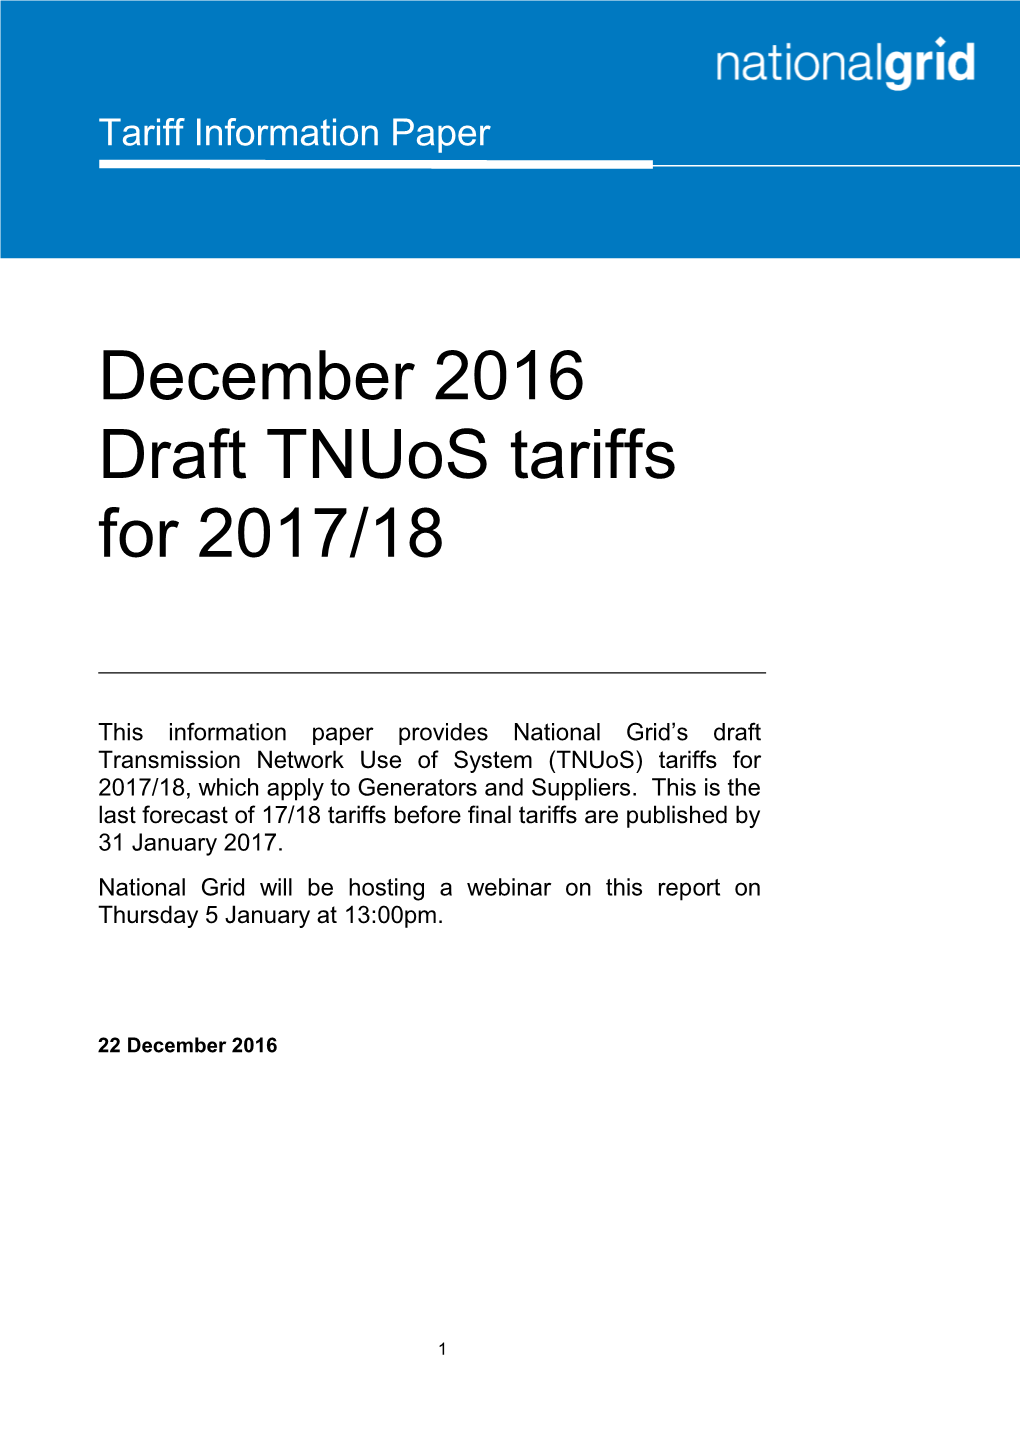 December 2016 Draft Tnuos Tariffs for 2017/18